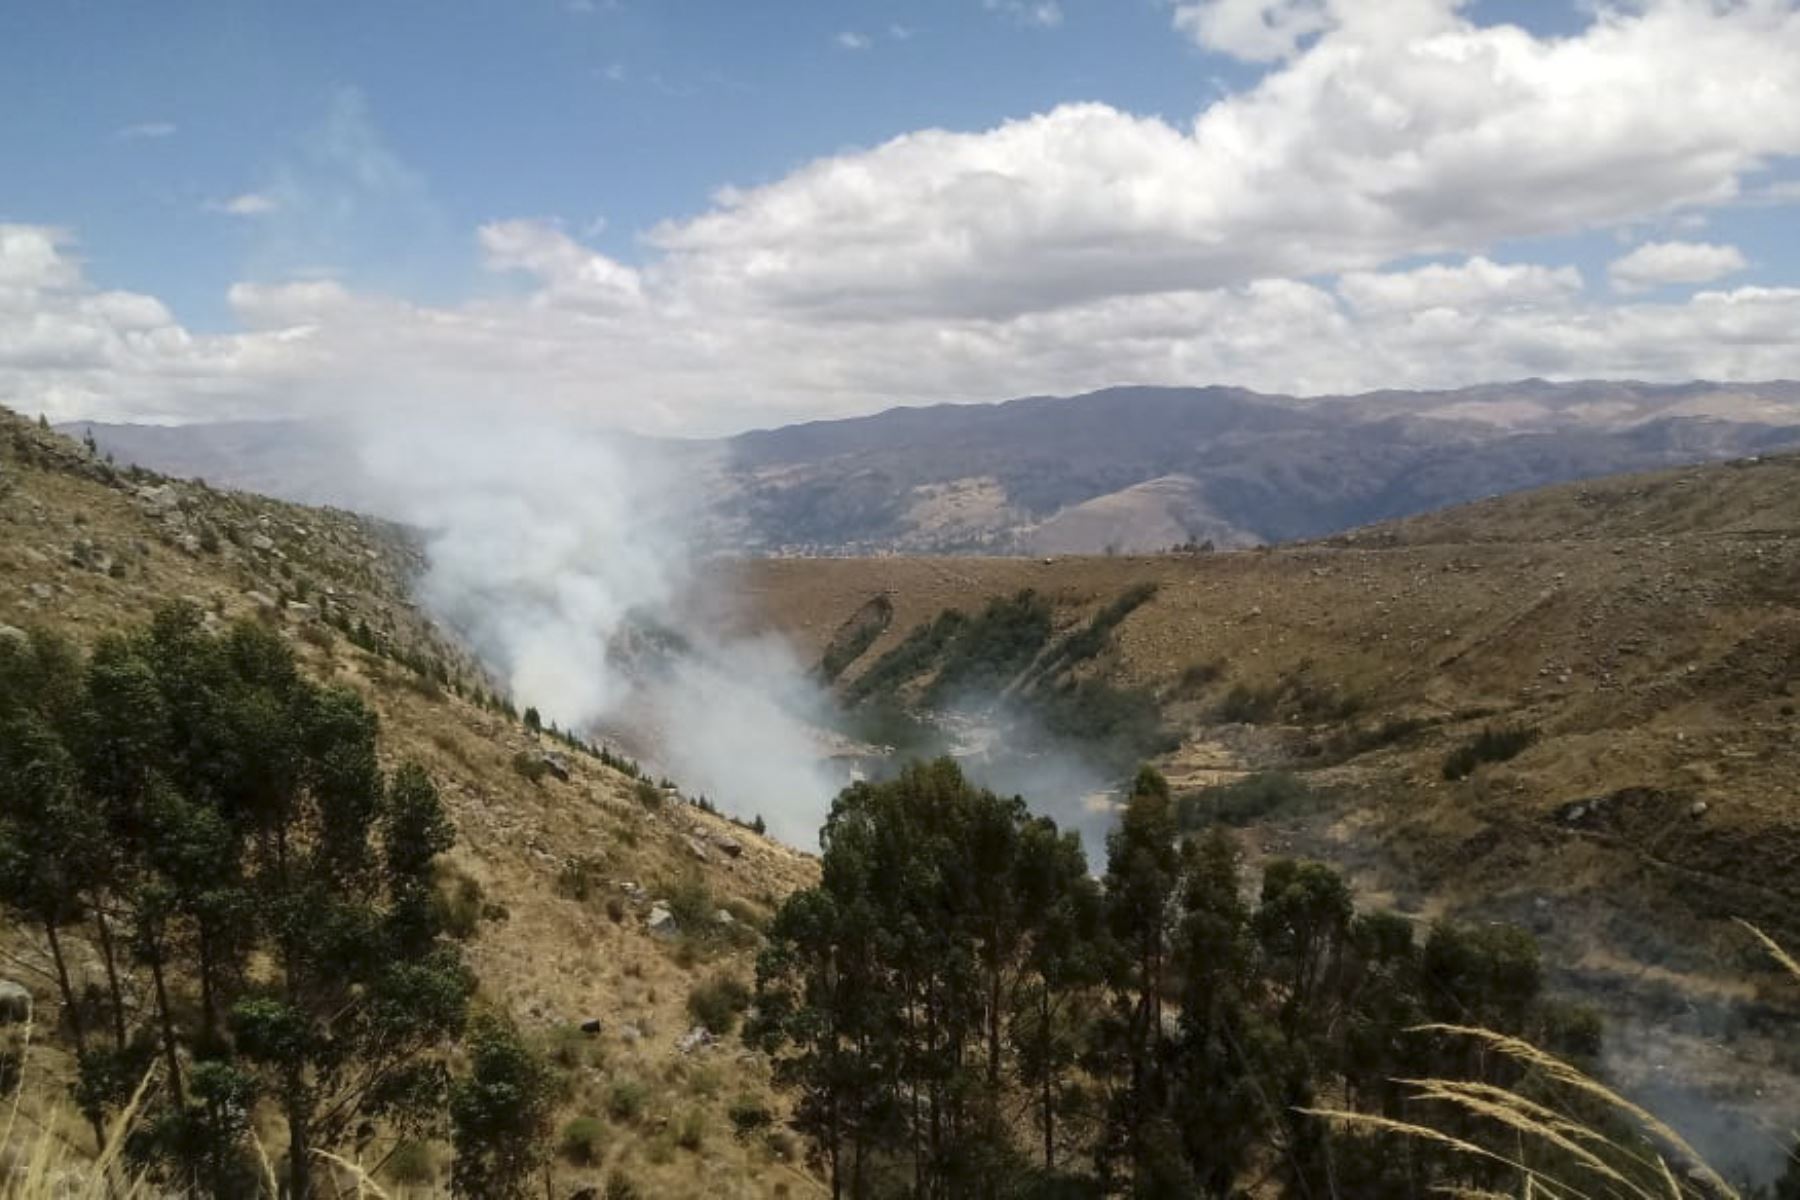 El fuego está consumiendo pastos naturales, plantaciones de eucalipto y pino de la quebrada Cojup, cerca del Huascarán. Foto: ANDINA/Difusión